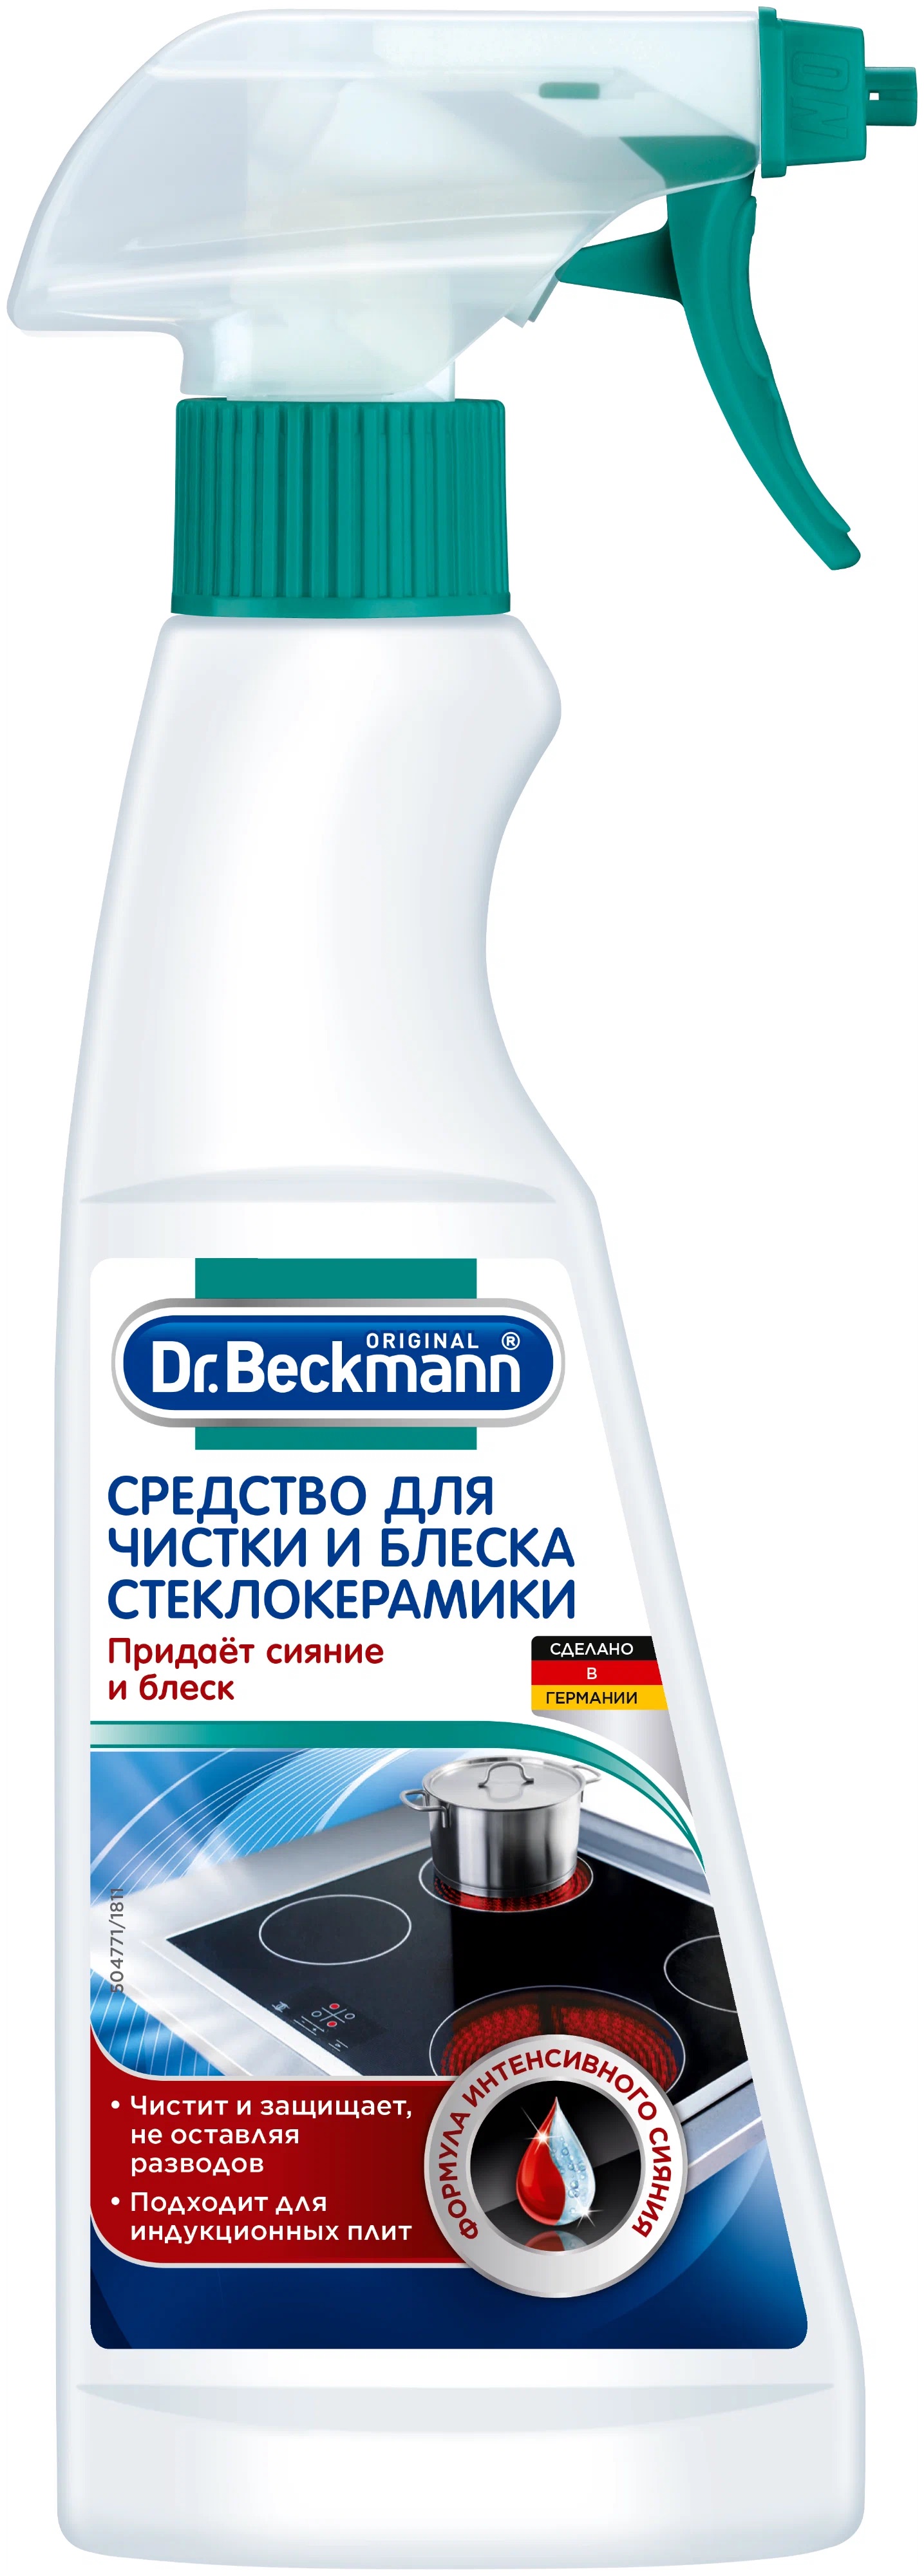 Средство Dr. Beckmann для очистки и блеска стеклокерамики 250мл  - купить